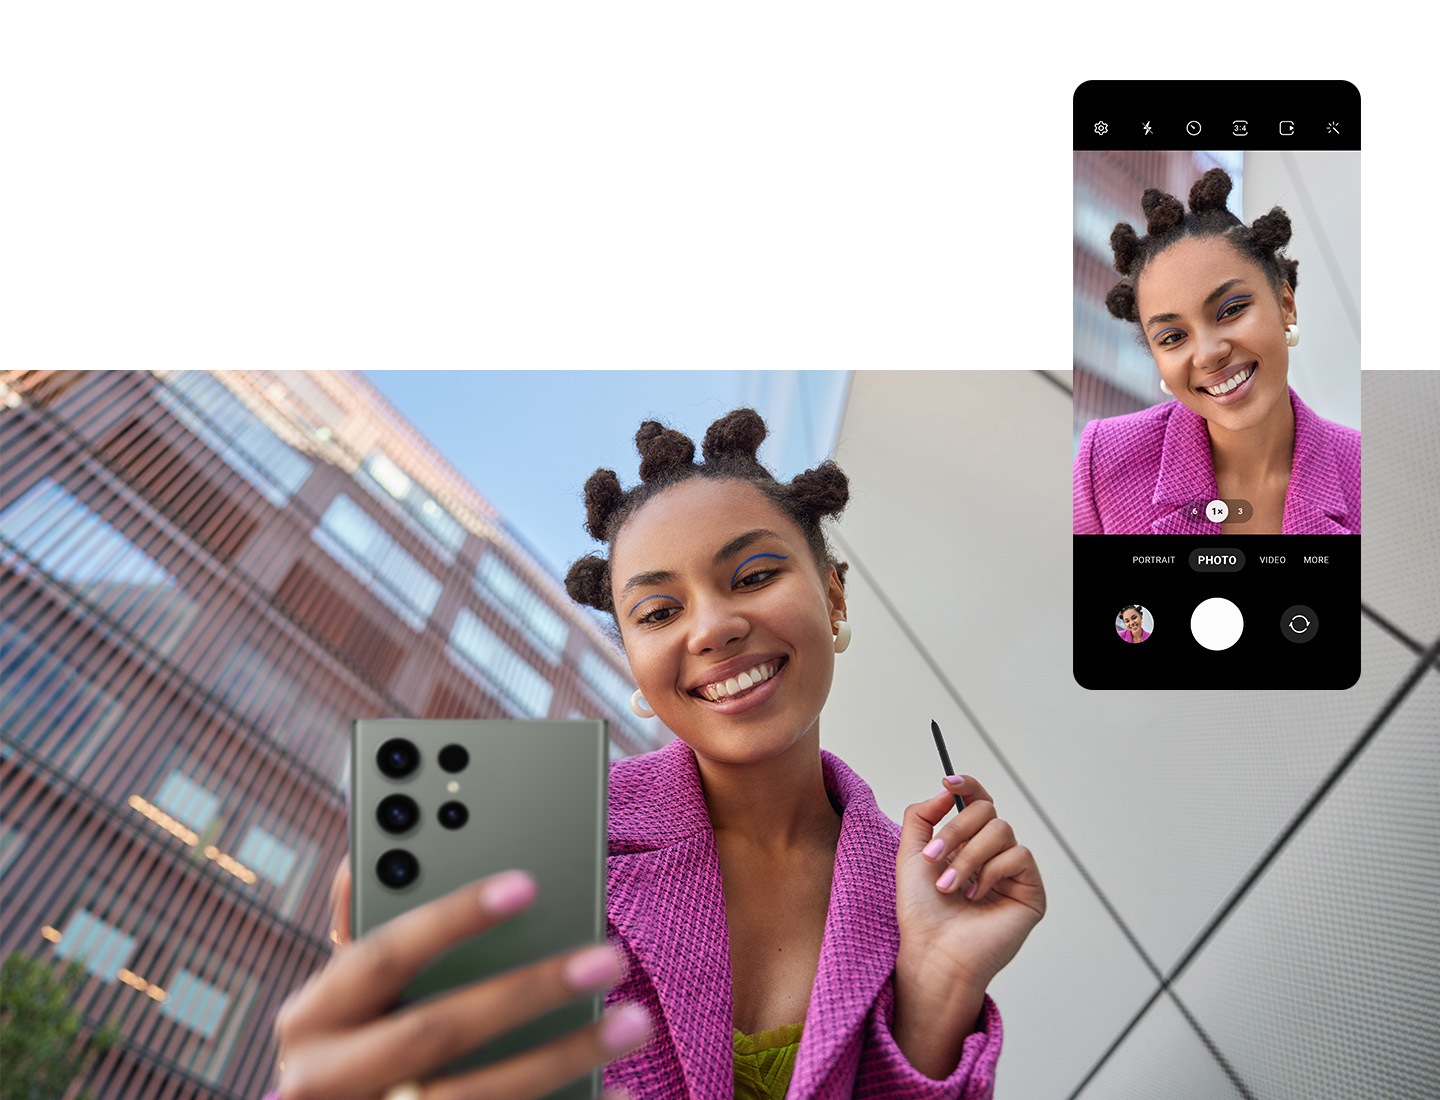 Una mujer parada en el exterior entre dos edificios toma una selfie con la cámara frontal del Galaxy S23 Ultra usando la función de control remoto del S Pen. En la parte superior, la interfaz gráfica de usuario de la aplicación de la CÁMARA en el Galaxy S23 Ultra se muestra con la mujer en el centro.